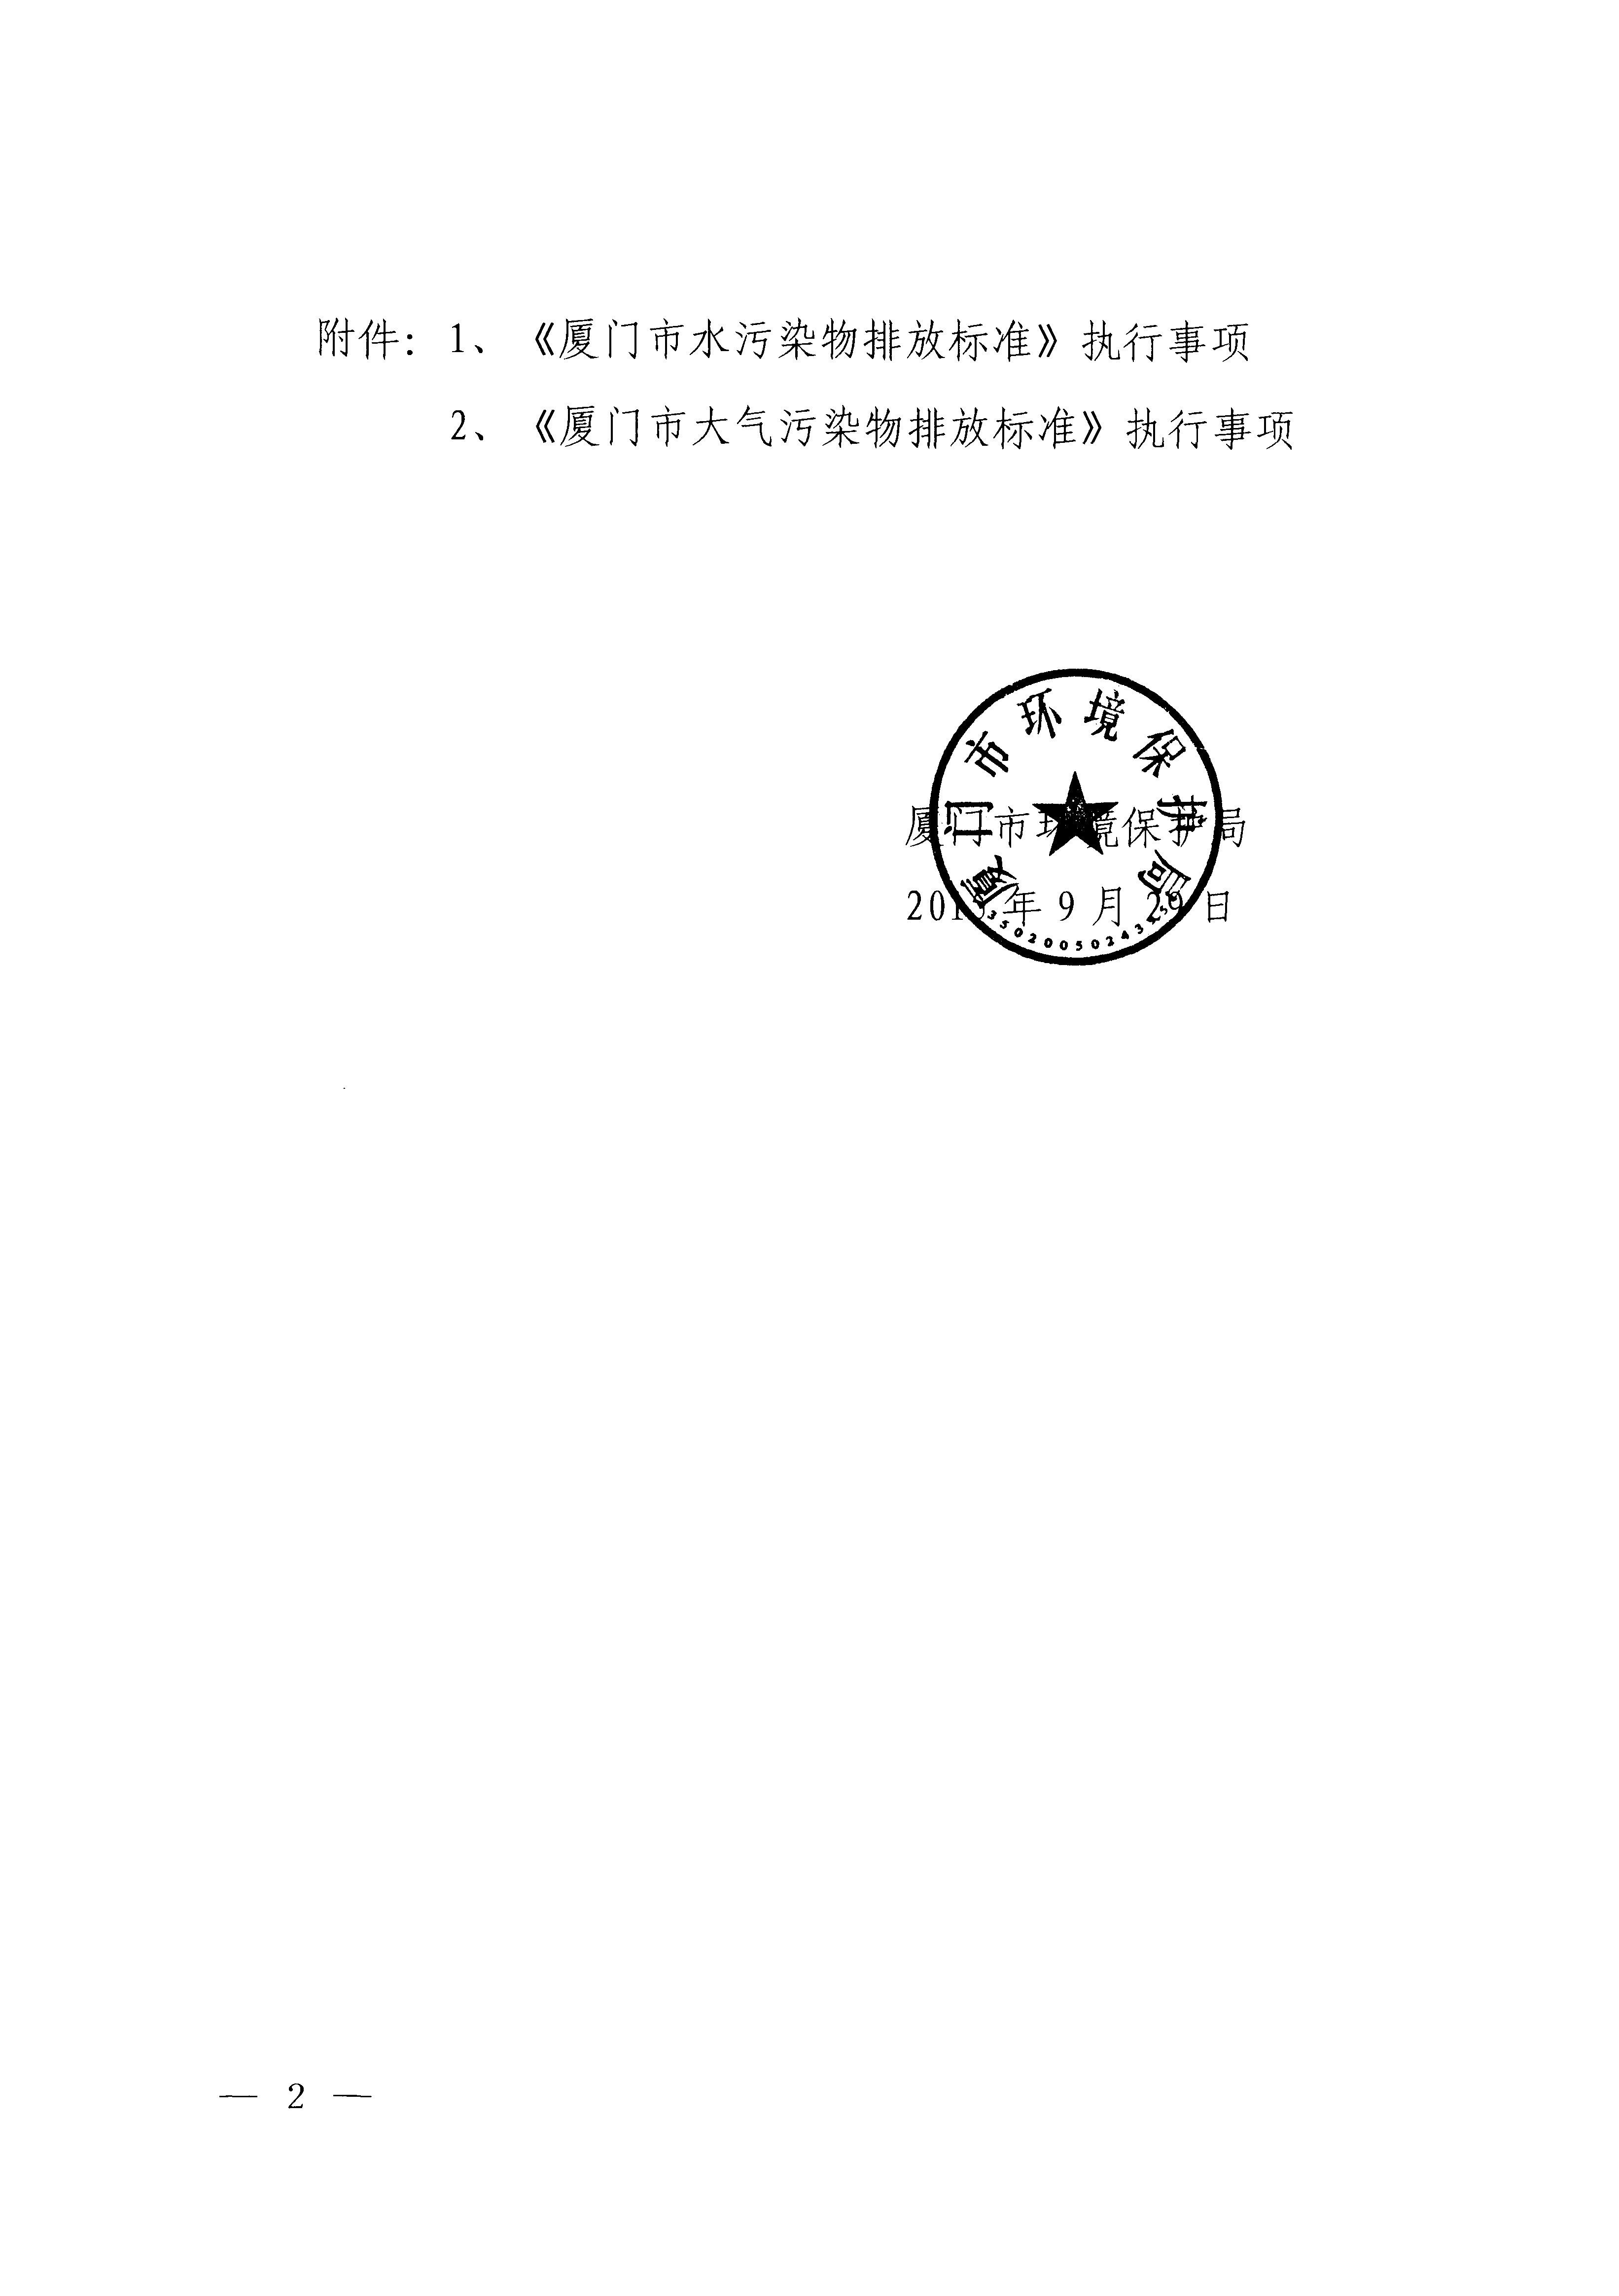 福建省地方标准《厦门市大气污染物排放标准》（DB35-2011）_页面_02.jpg